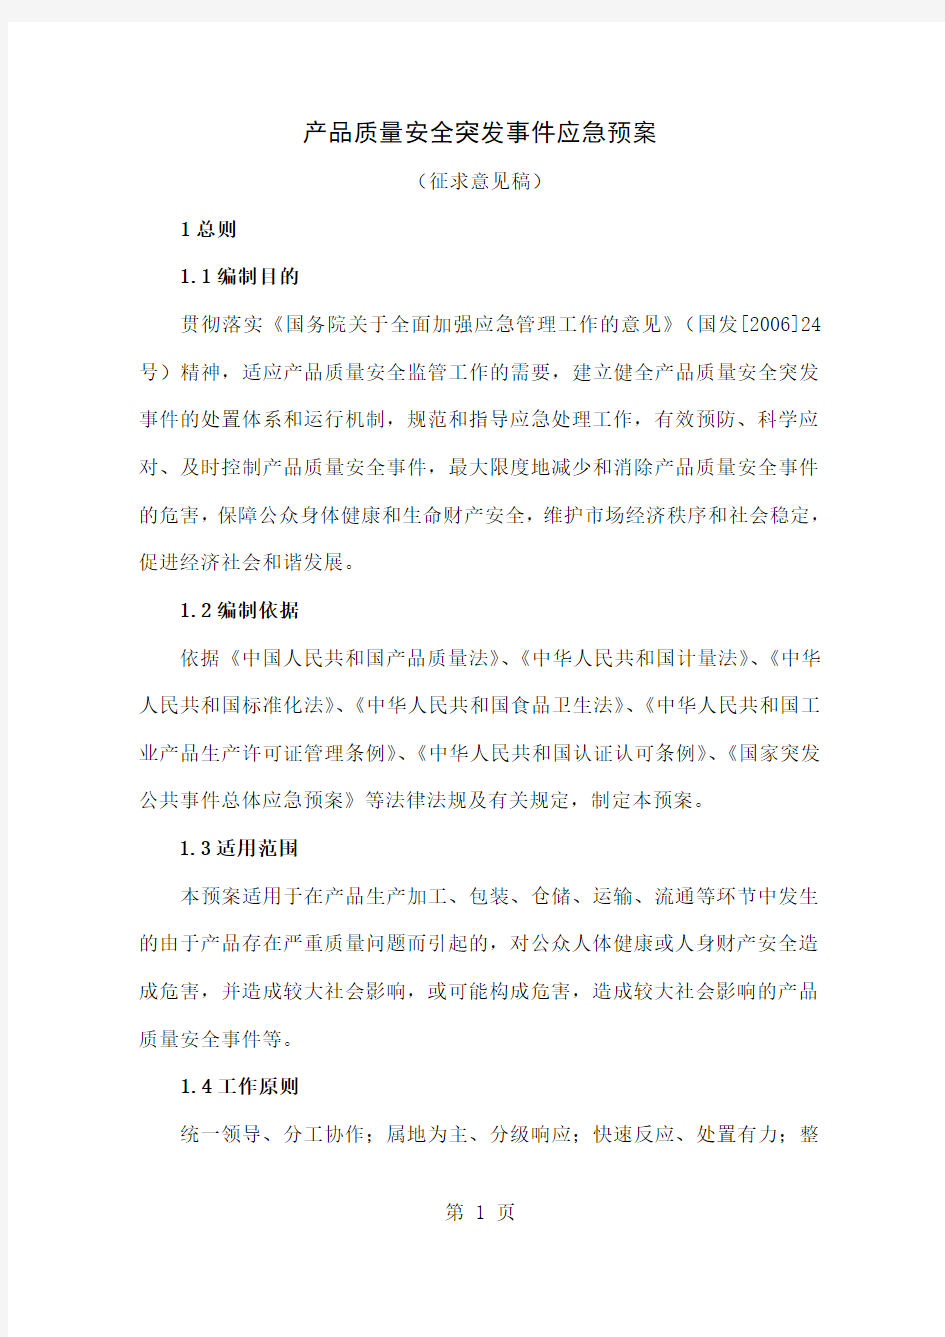 上海市突发公共事件总体应急预案共16页文档